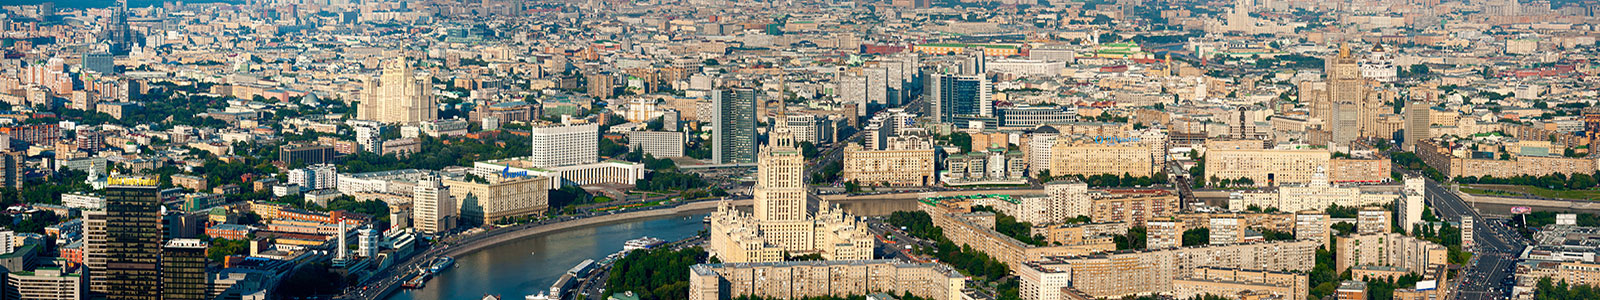 №1717 - Взгляд на Москву с высоты птичьего полета